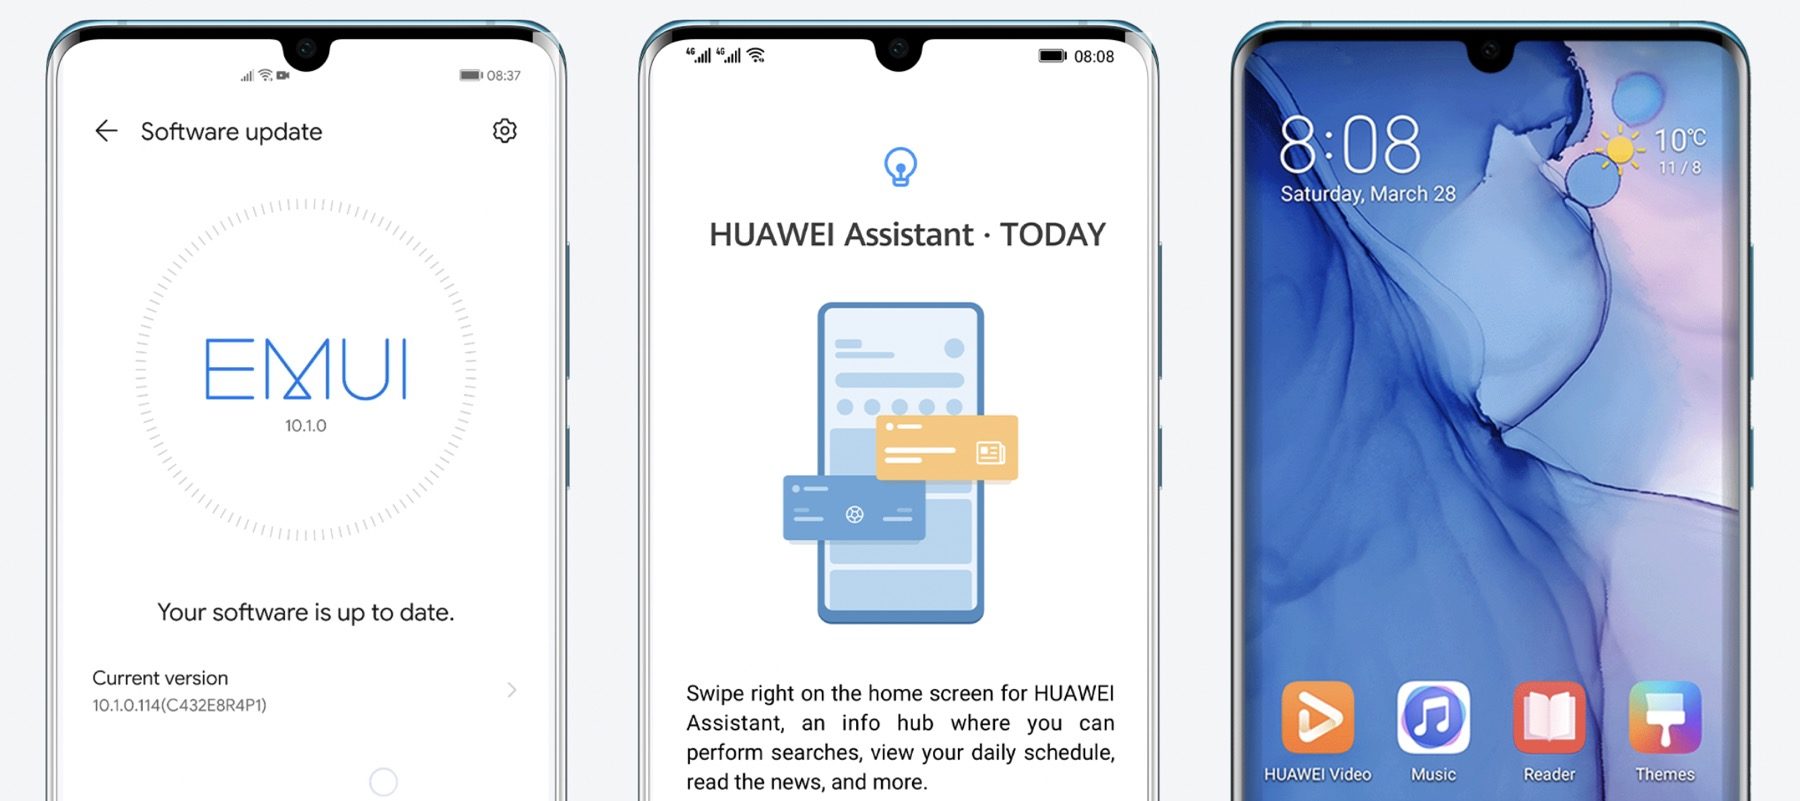 Kirolak, burtsak eta berriak zure esku: Huawei laguntzailea pausoz pauso
